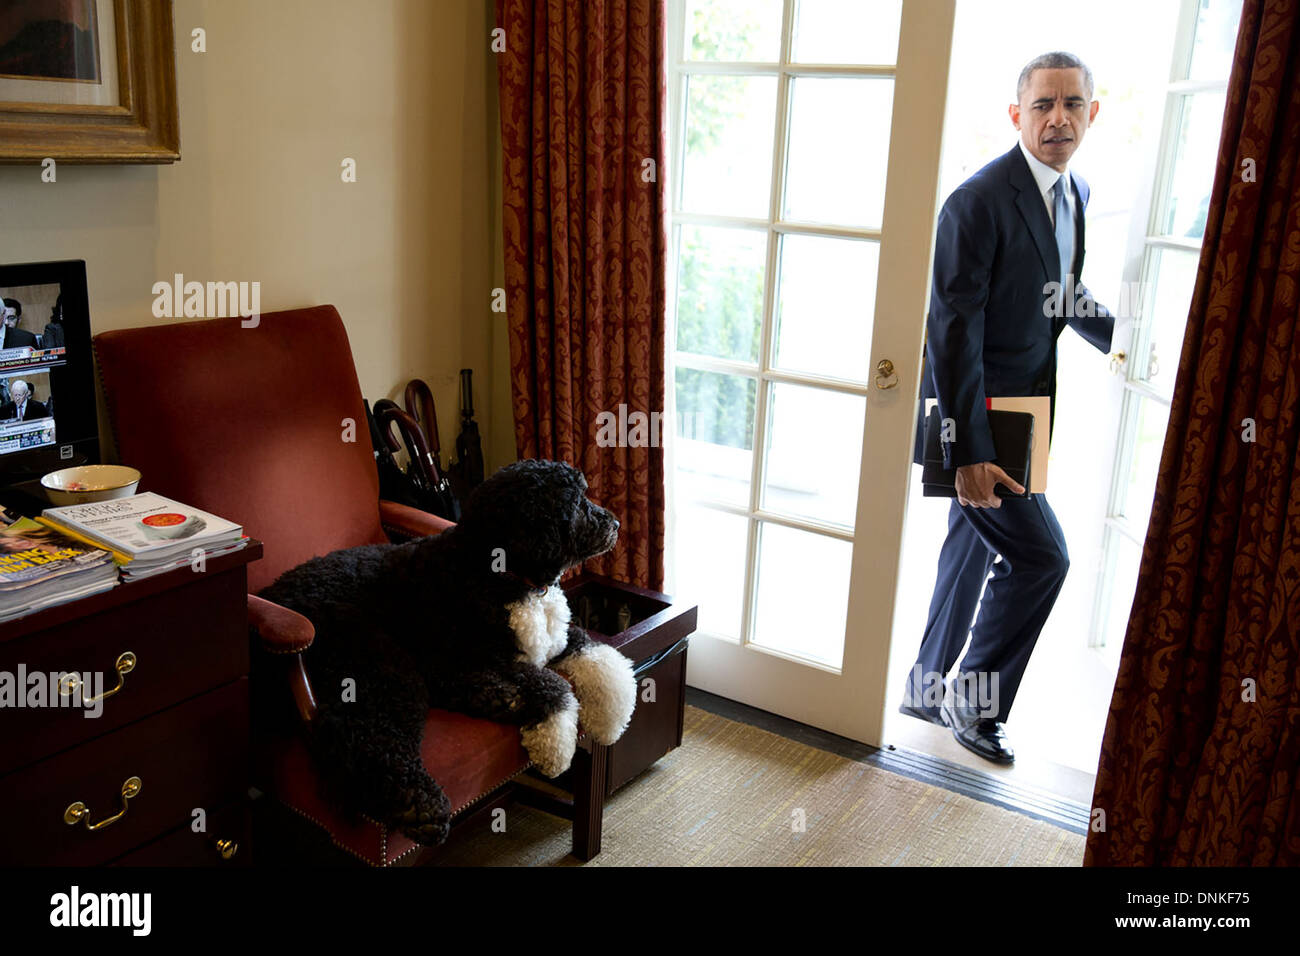 Bo le chien de la famille regarde le président américain Barack Obama entrez le bureau ovale extérieure à la Maison Blanche le 6 novembre 2013 à Washington, DC. Banque D'Images